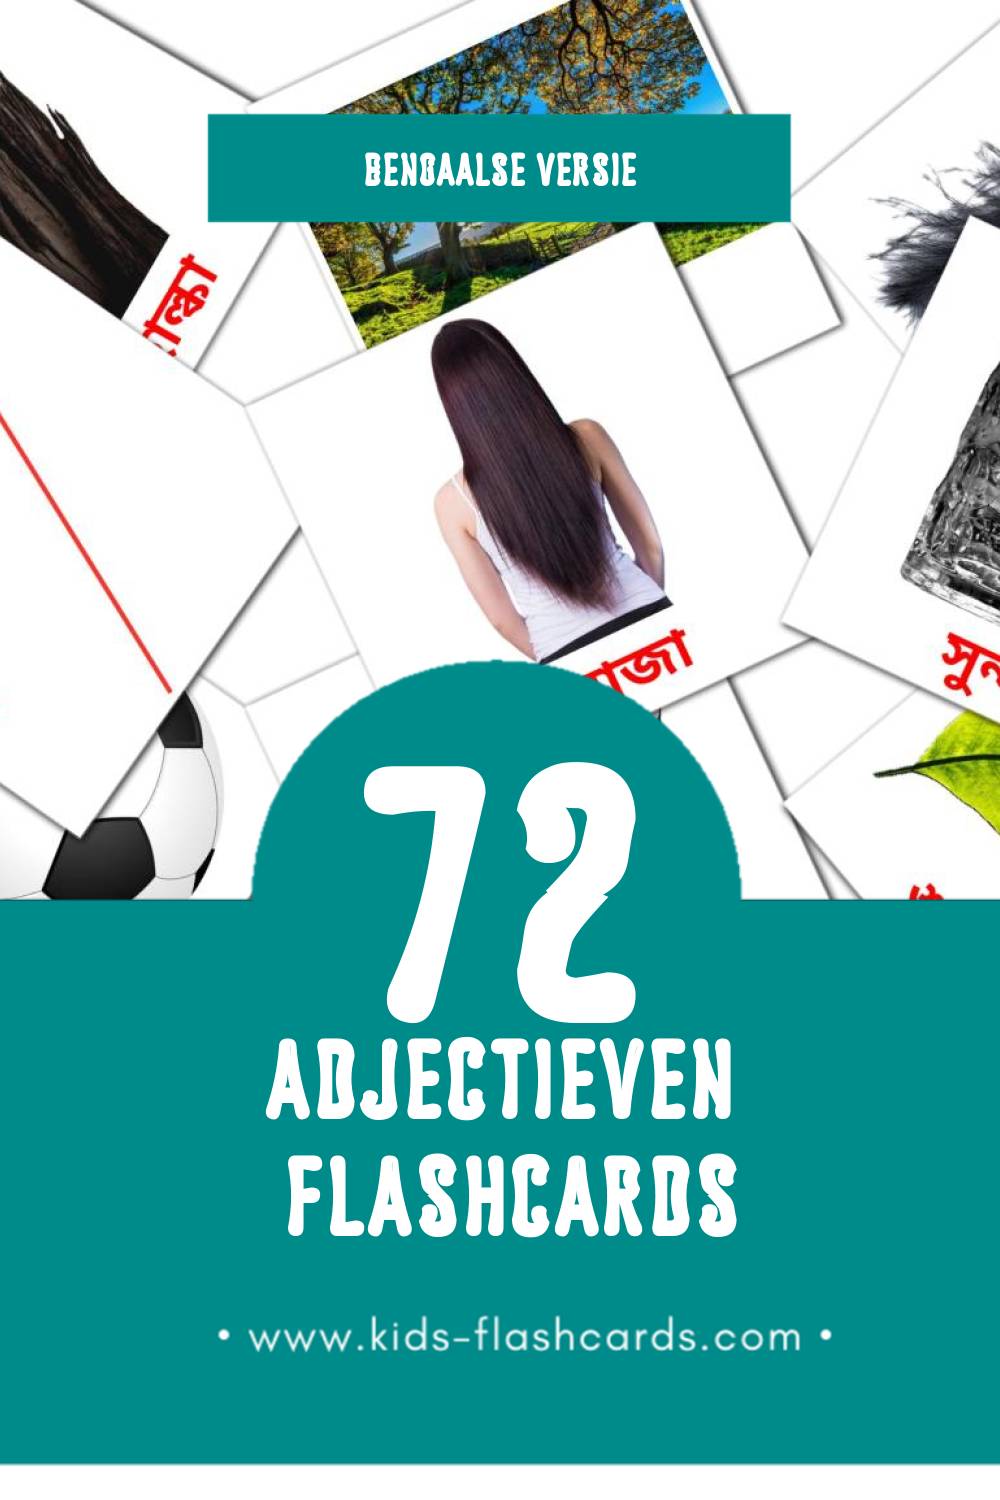 Visuele বিশেষণ Flashcards voor Kleuters (72 kaarten in het Bengaals)